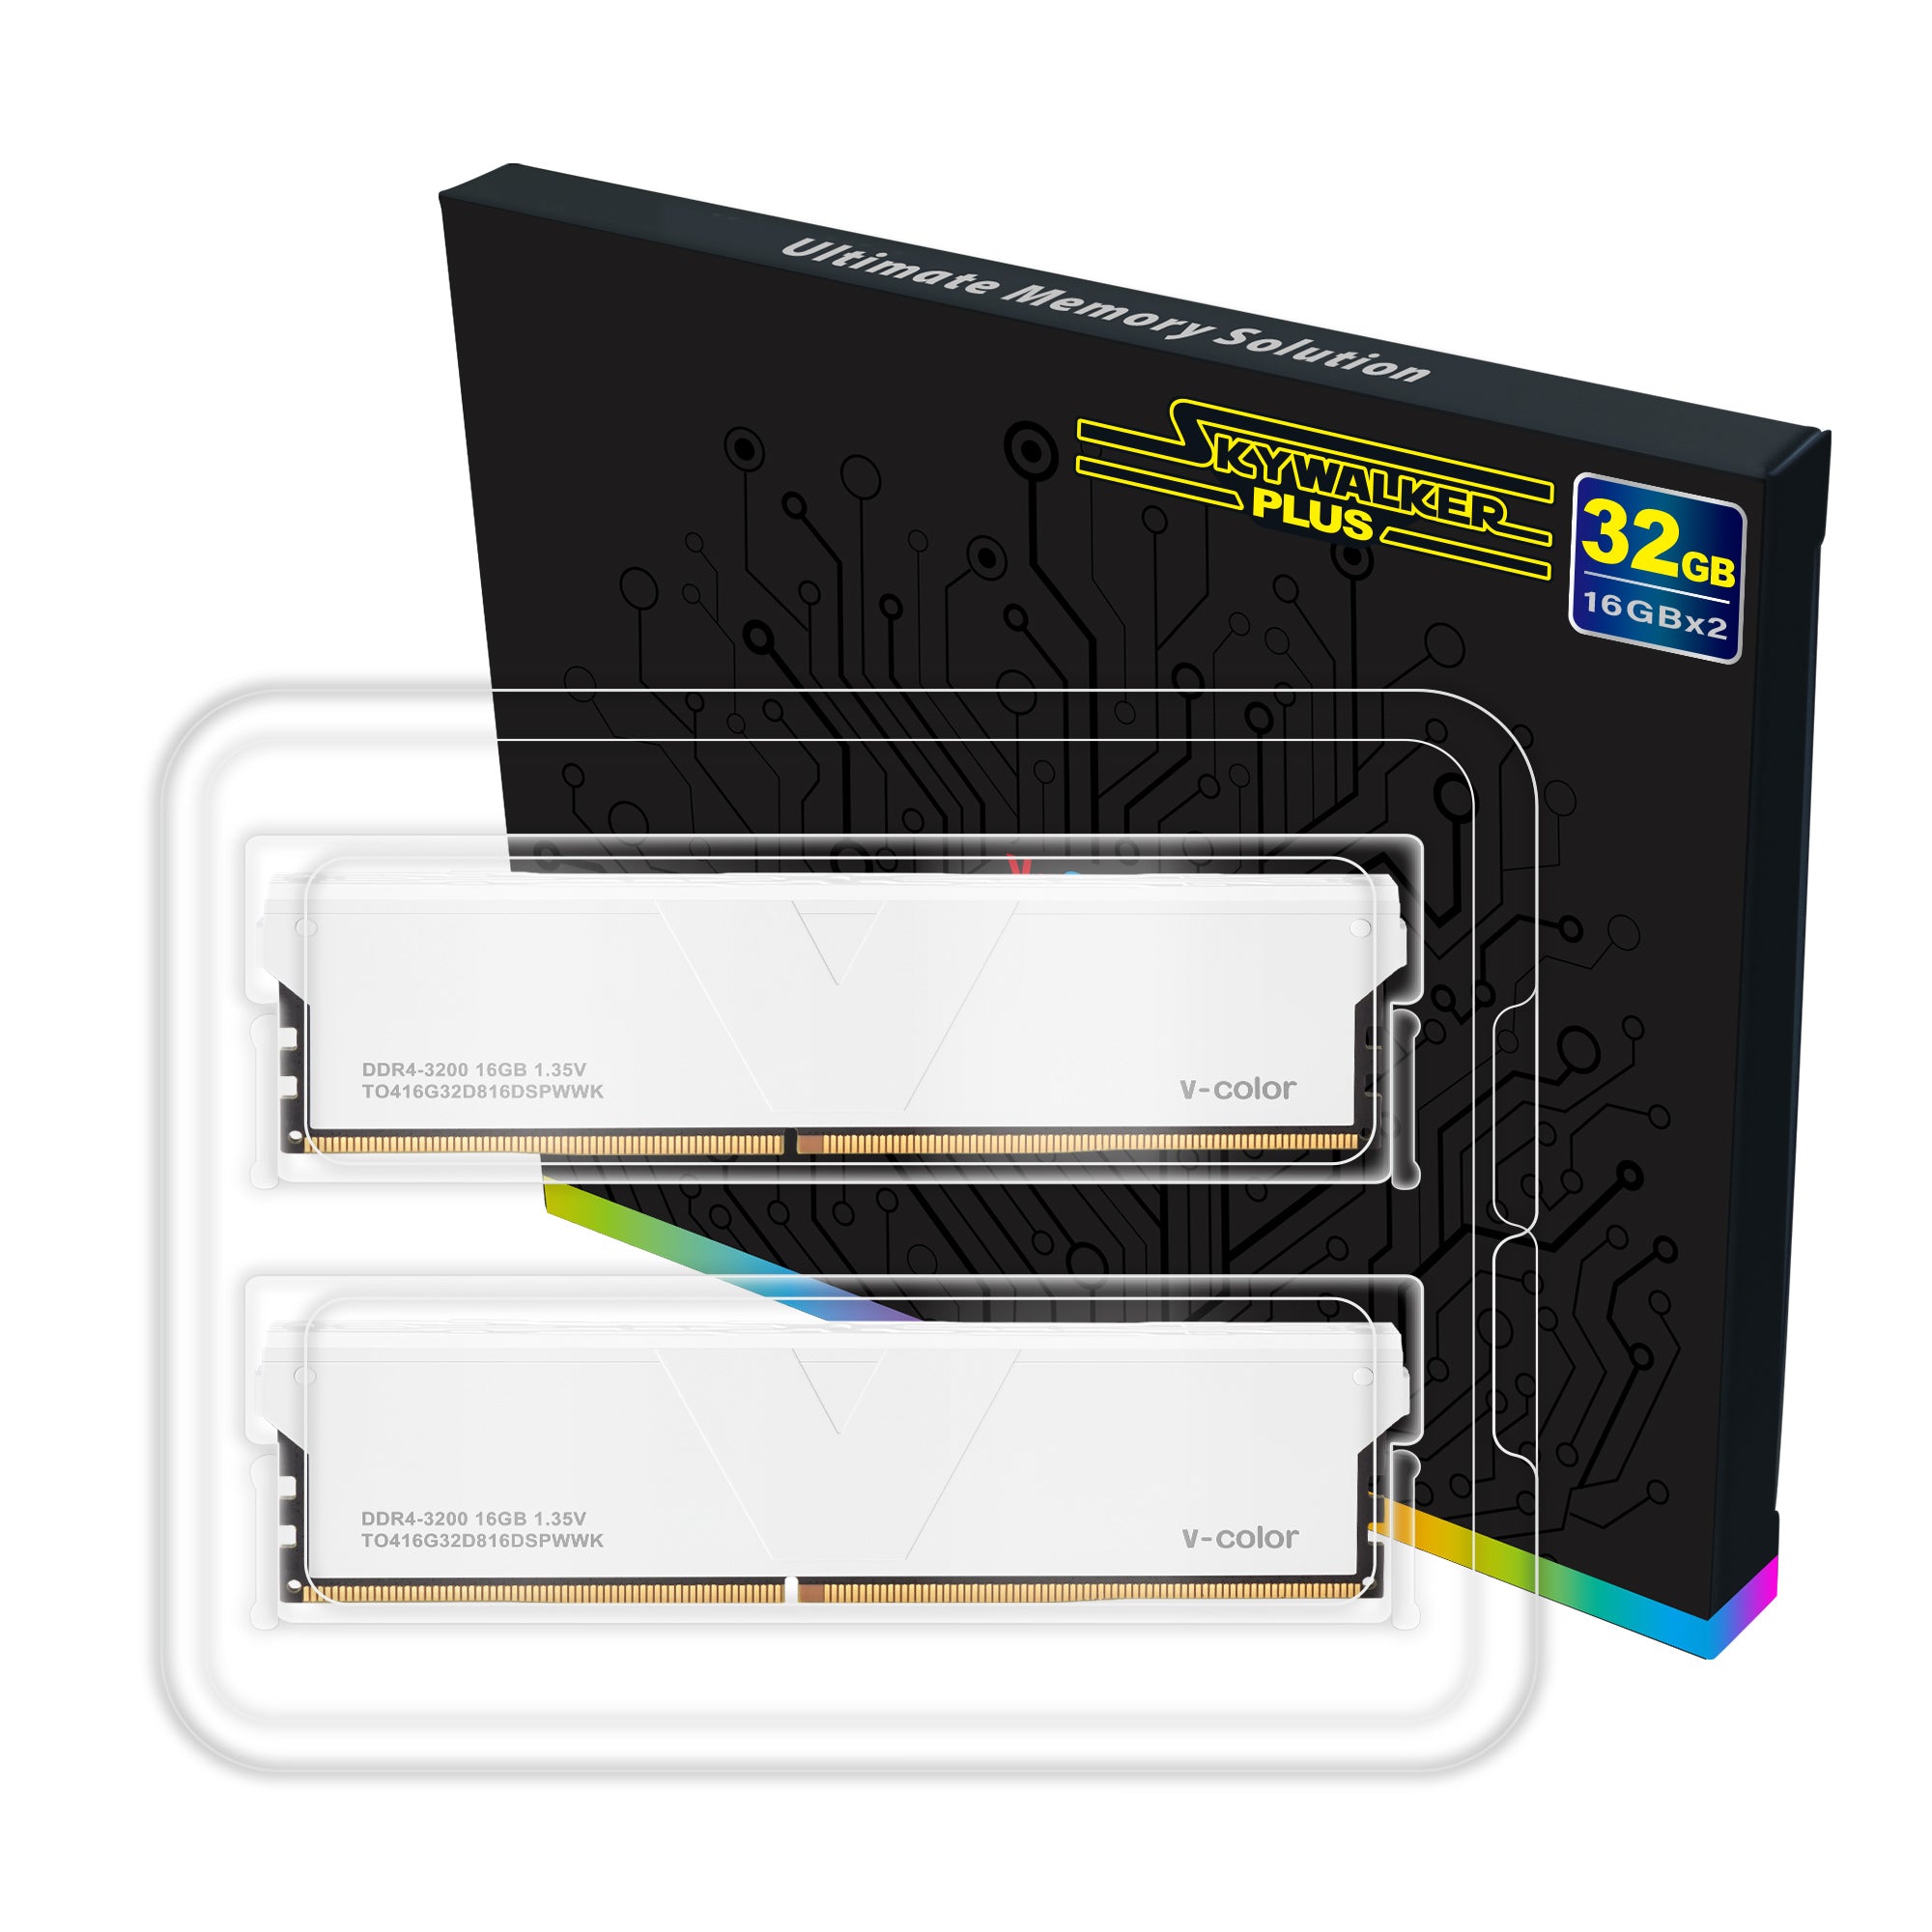 DDR4 | 32GB (16GBx2) | Skywalker Plus | Overclocking Memory | U 